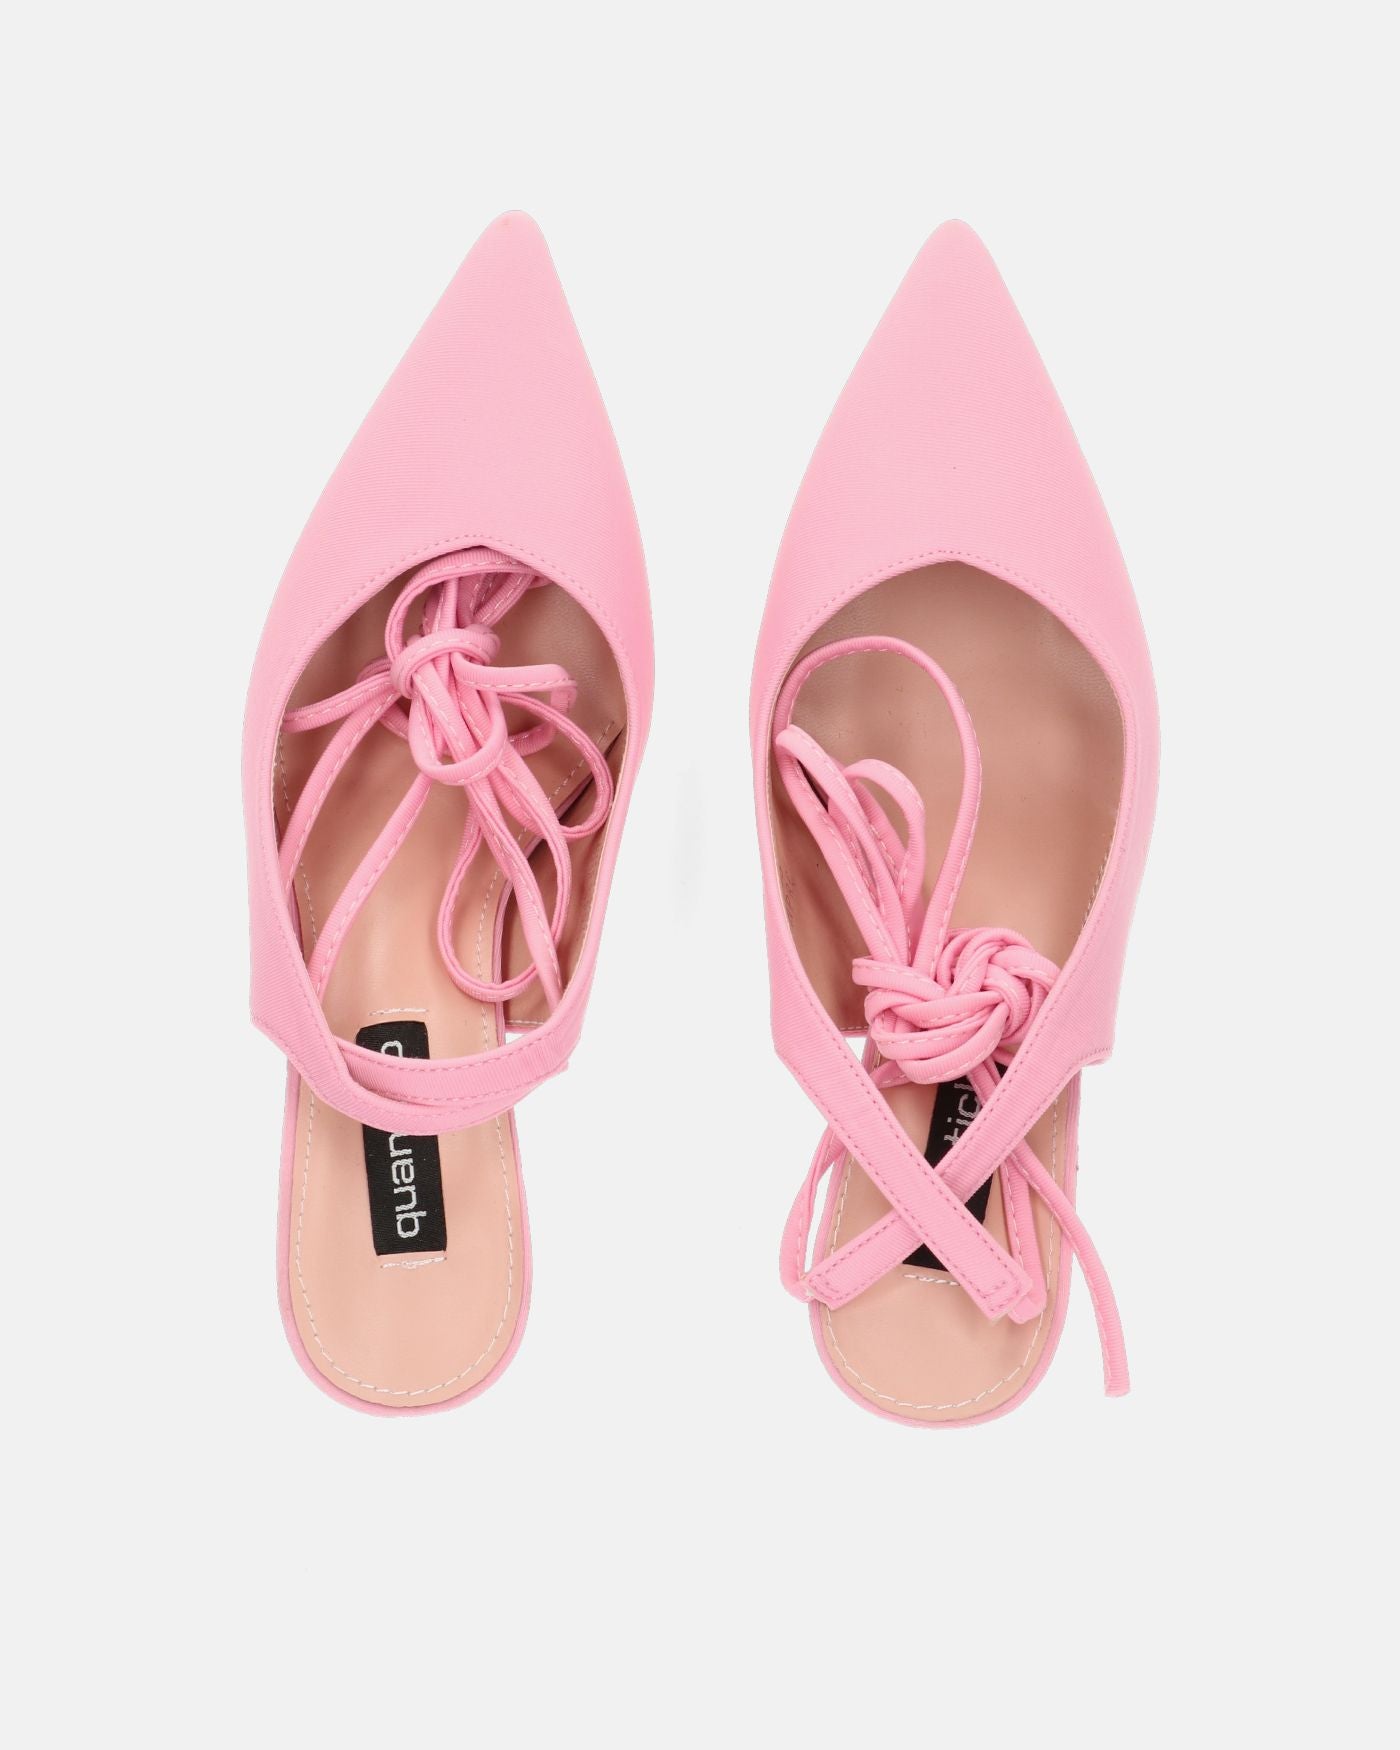 IOLE - zapato tacón stiletto lycra rosa